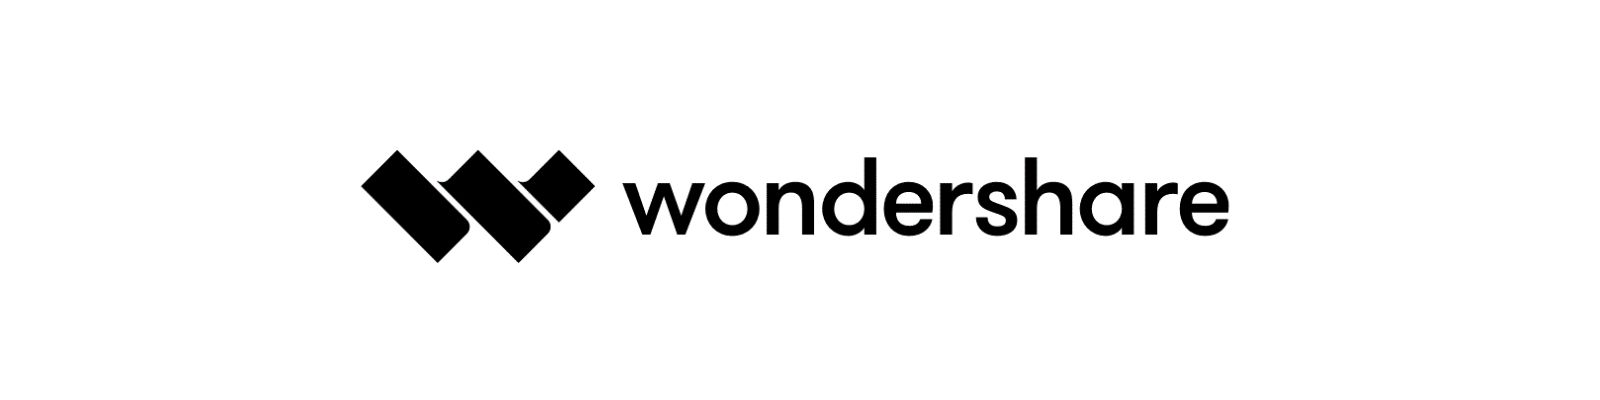 Wondershare é confiável? Conheça todos os detalhes!